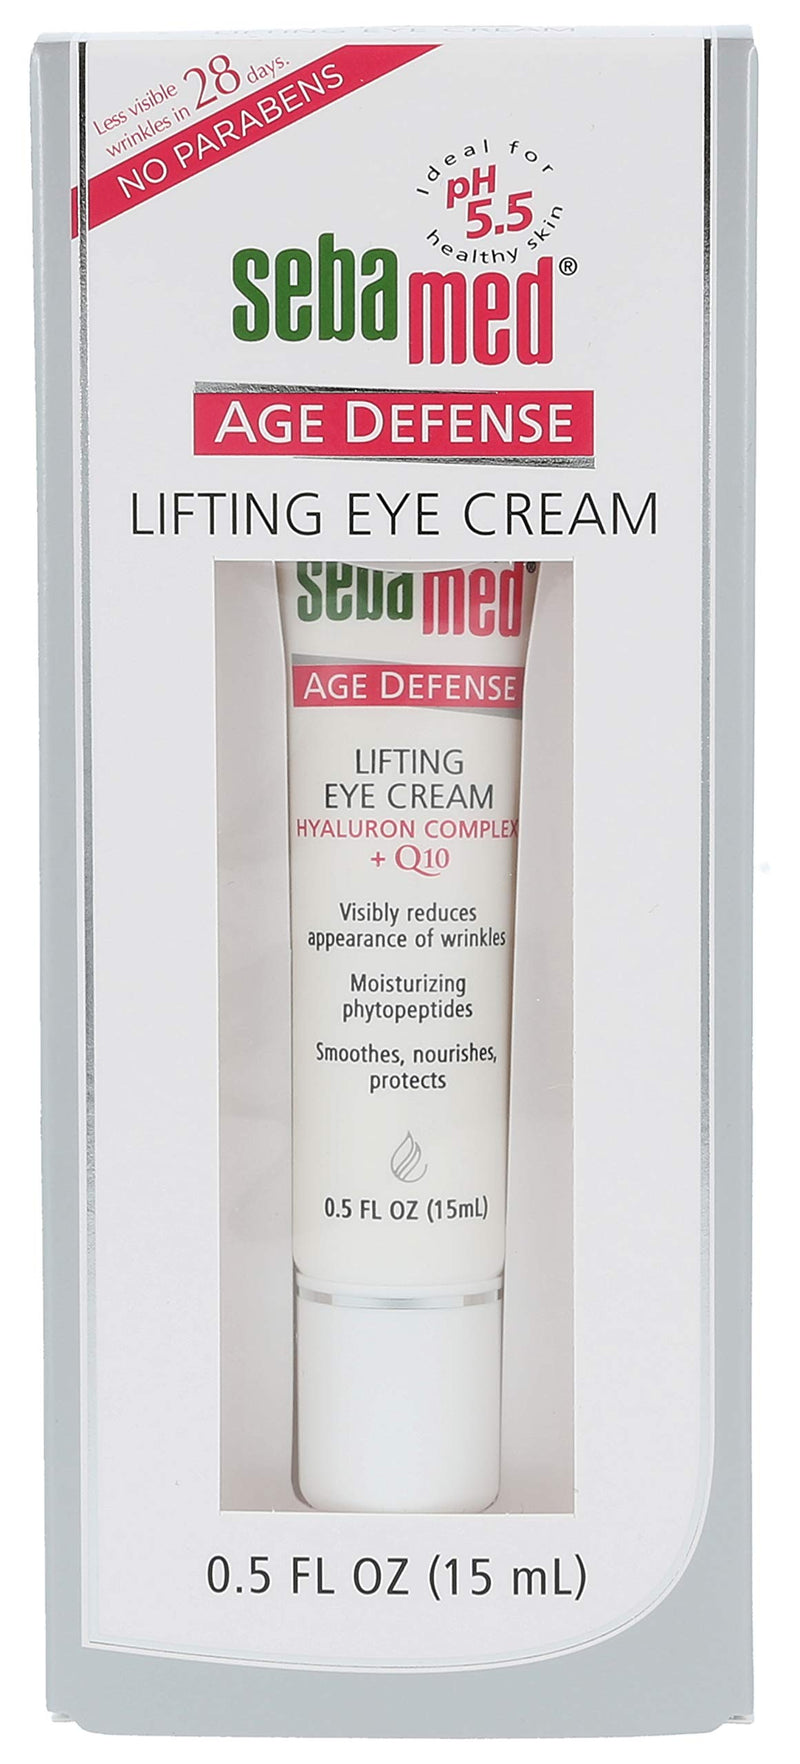 [Australia] - Sebamed Q10 Age Defense Eye Cream, 0.5 Fluid Ounce 1 Pack 